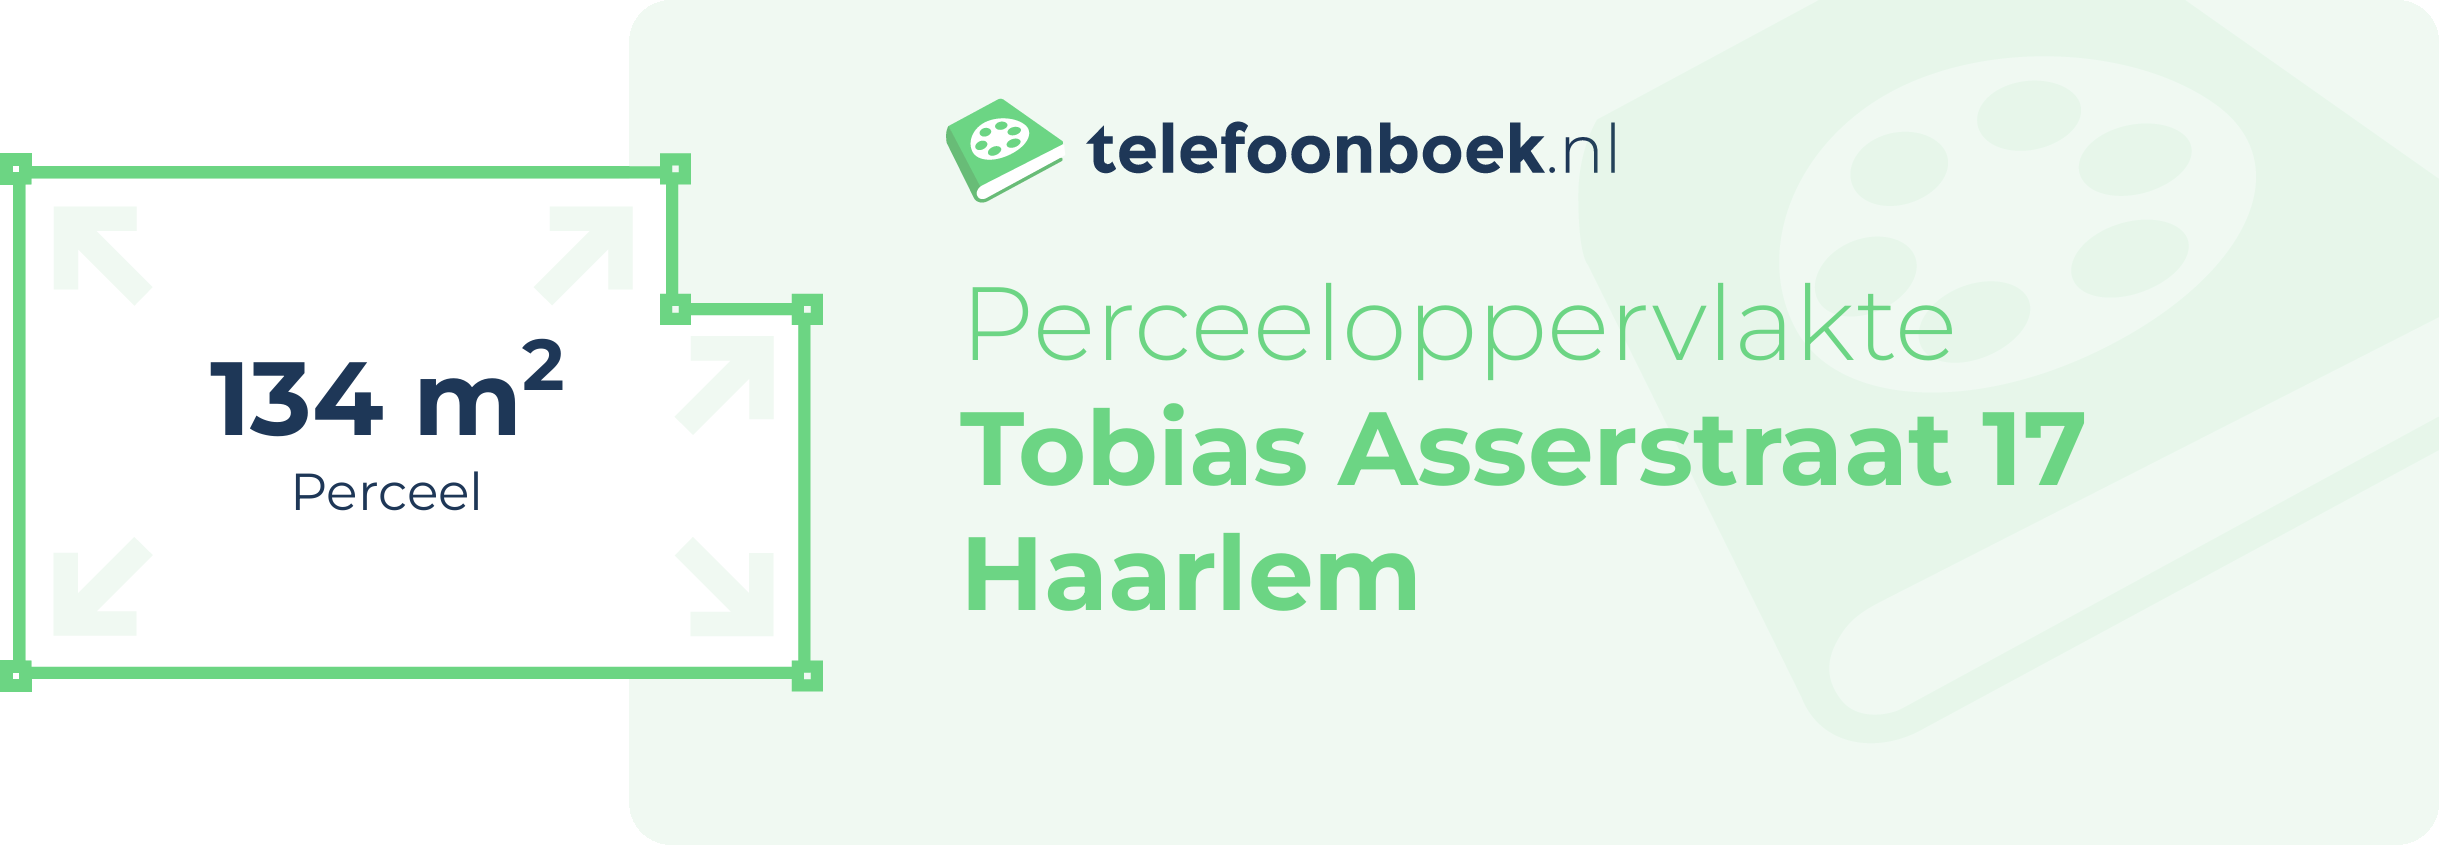 Perceeloppervlakte Tobias Asserstraat 17 Haarlem